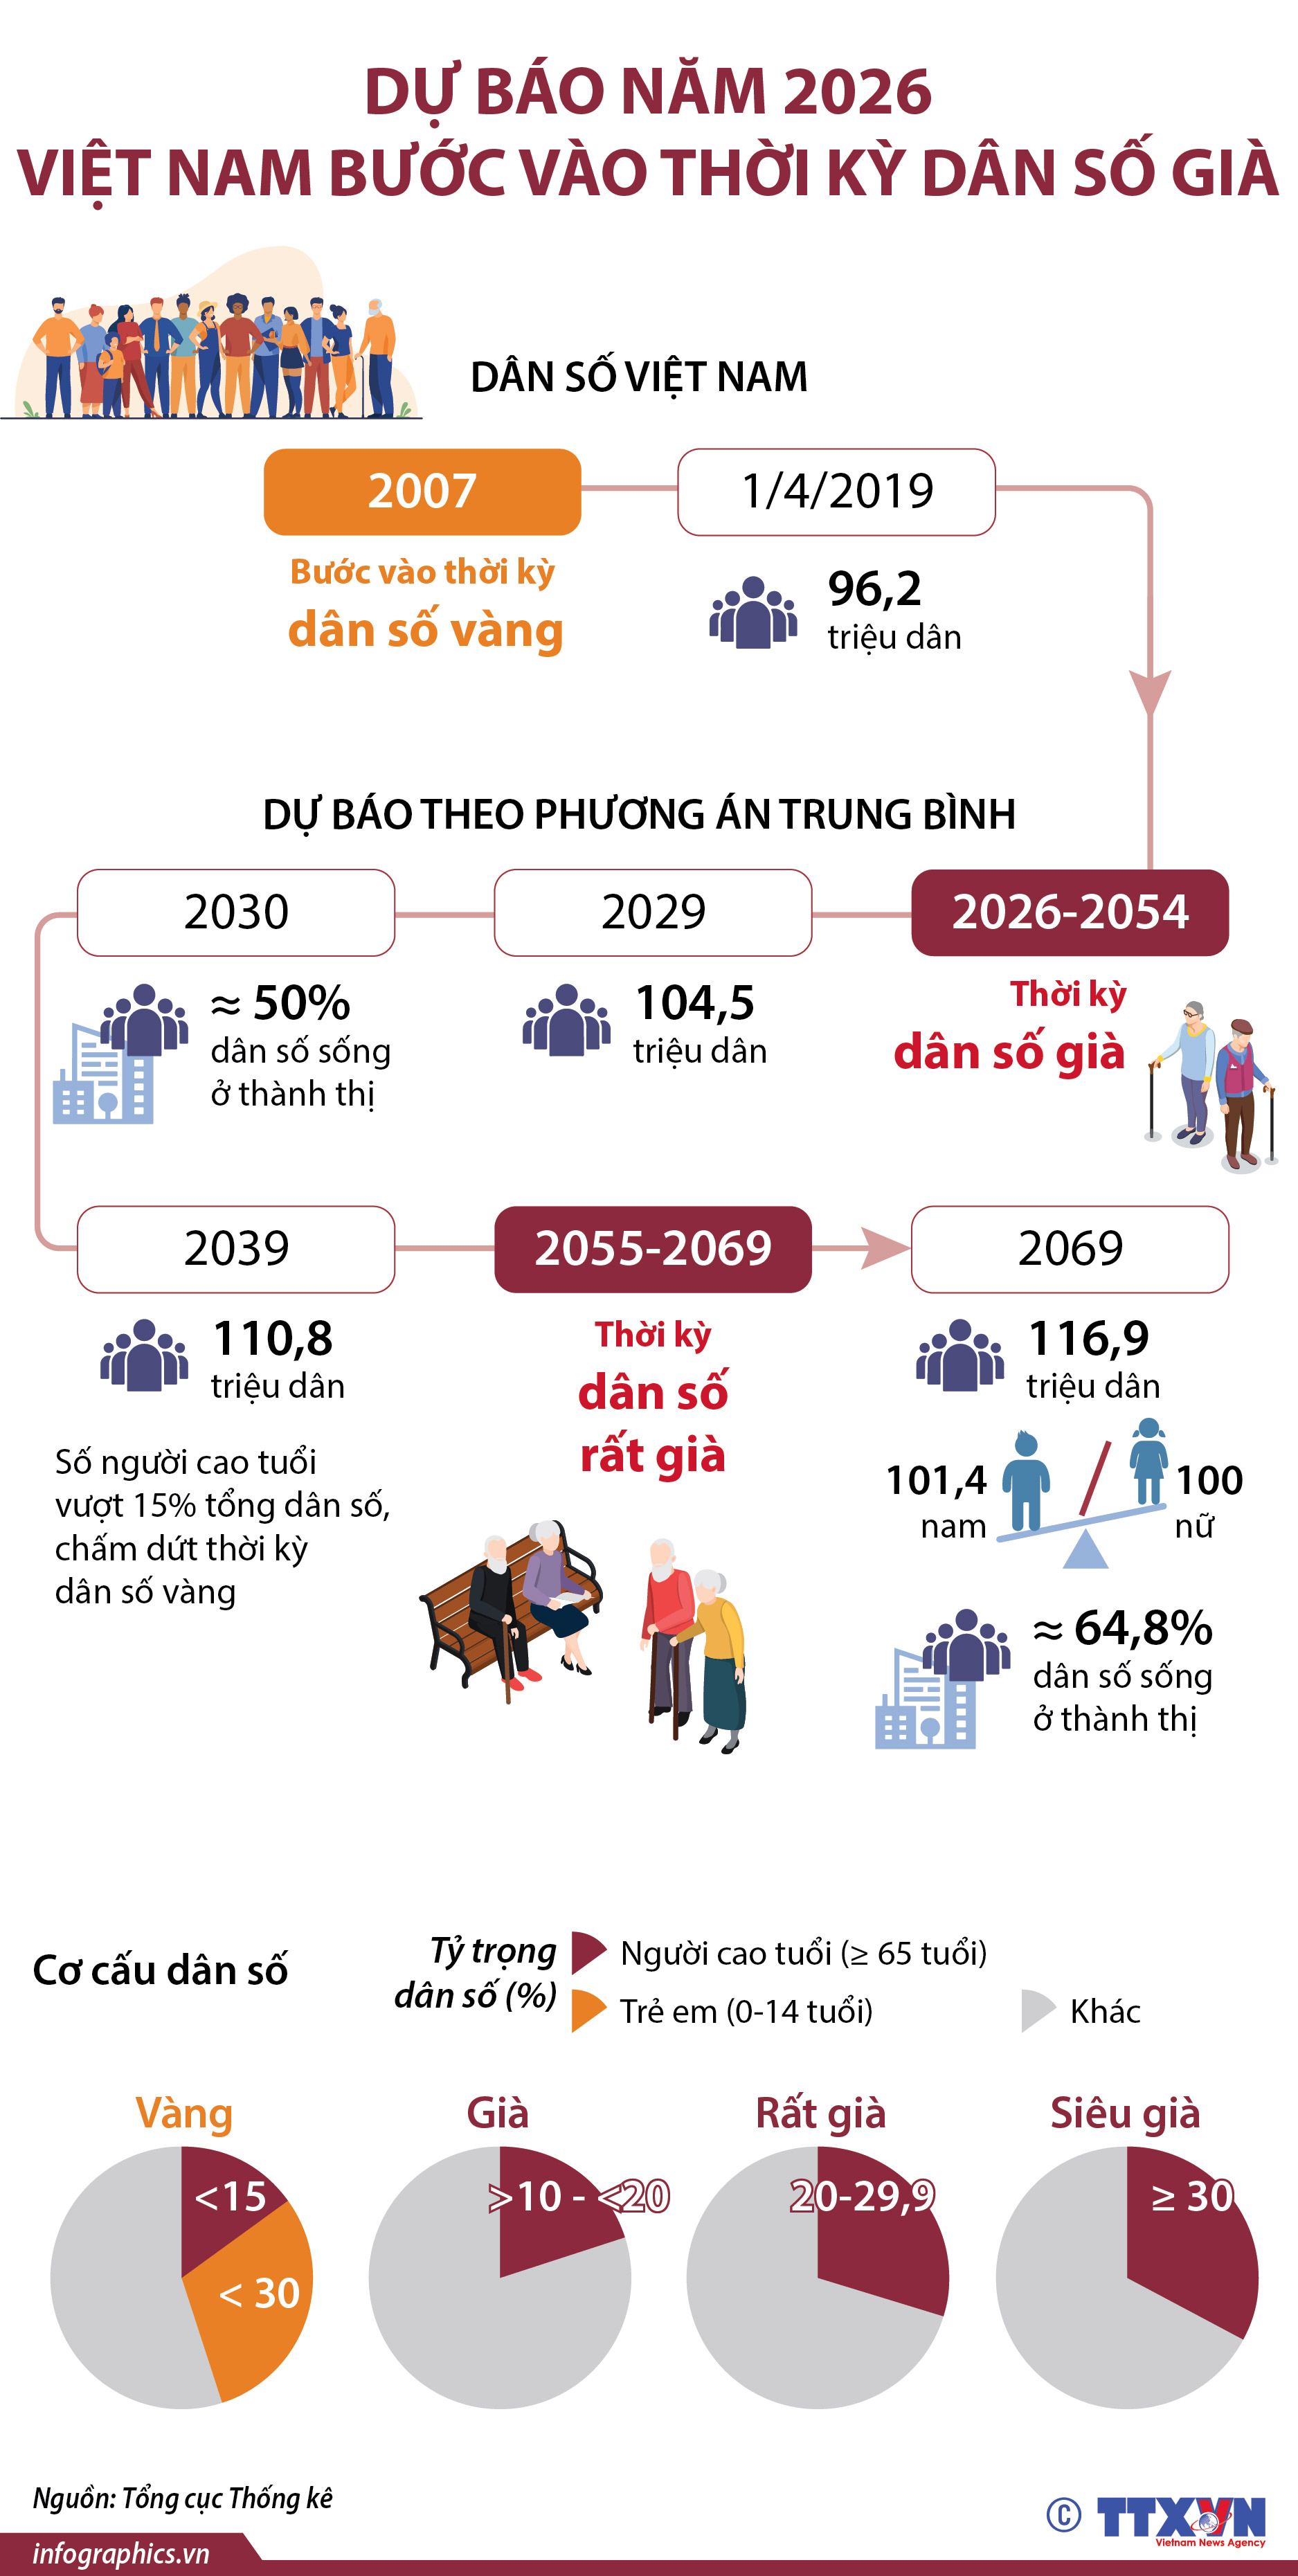 Dự báo năm 2026, Việt Nam bước vào thời kỳ dân số già